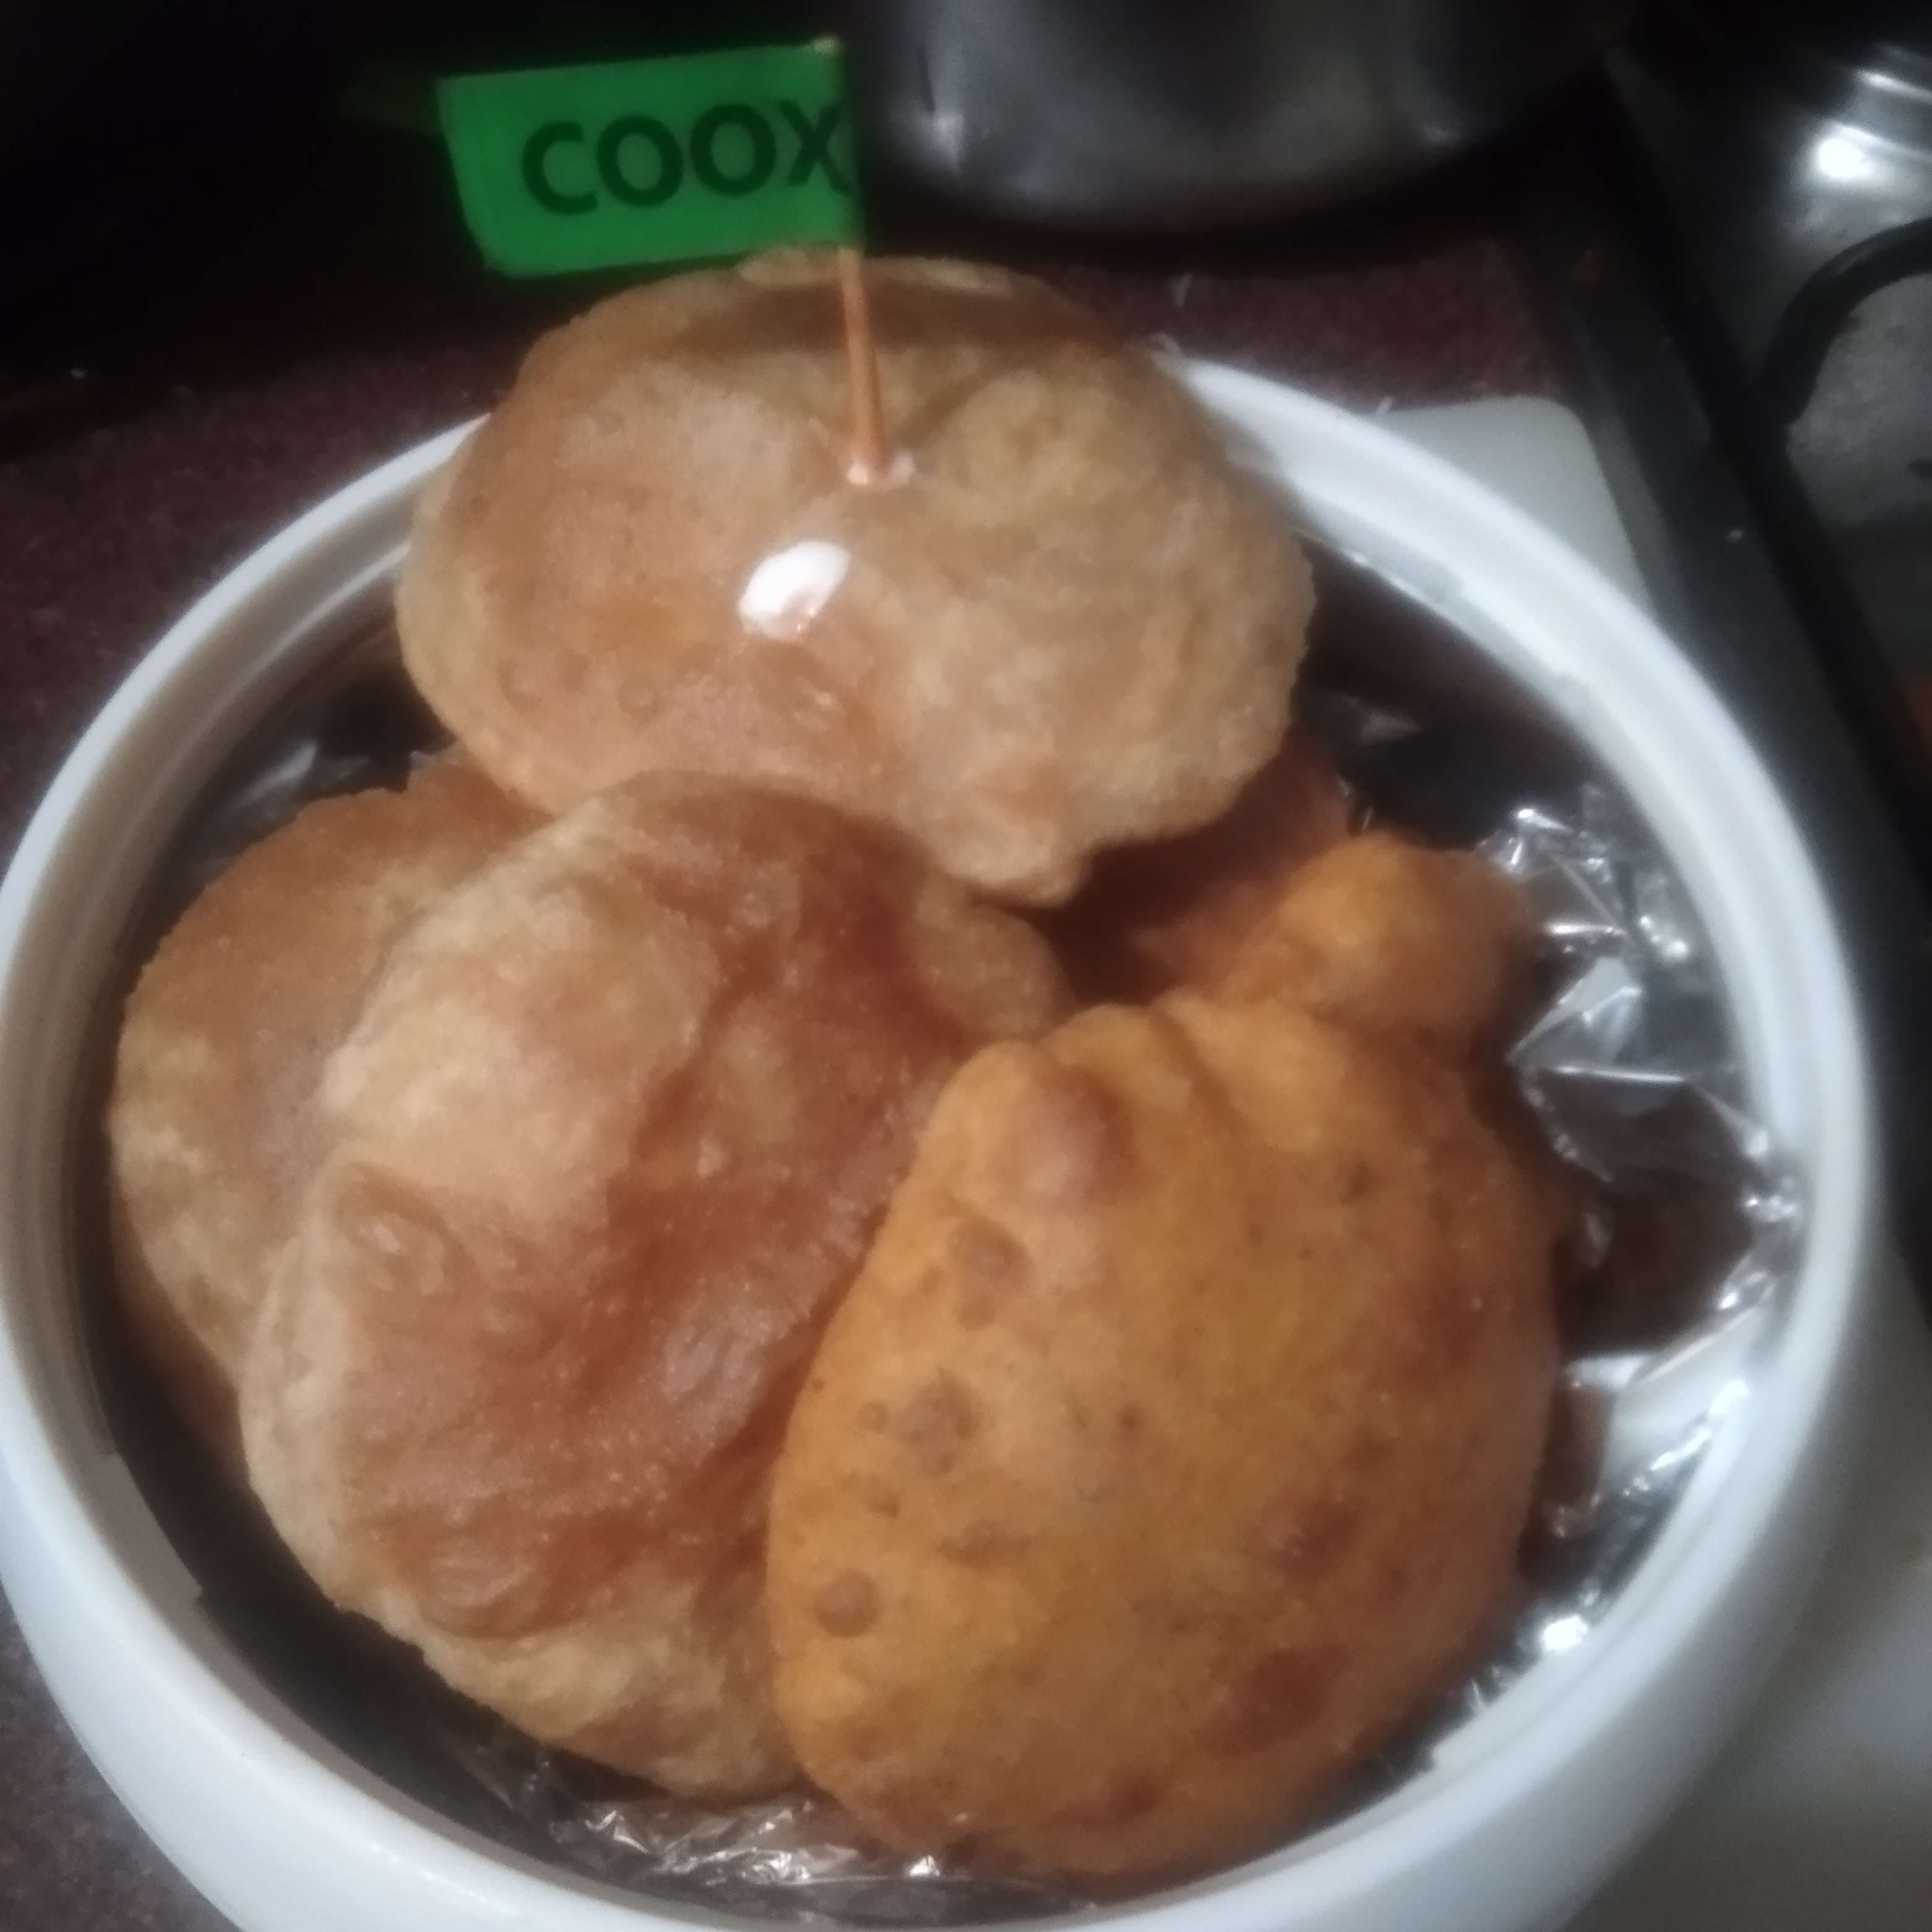 Delicious Poori & Bedmi prepared by COOX